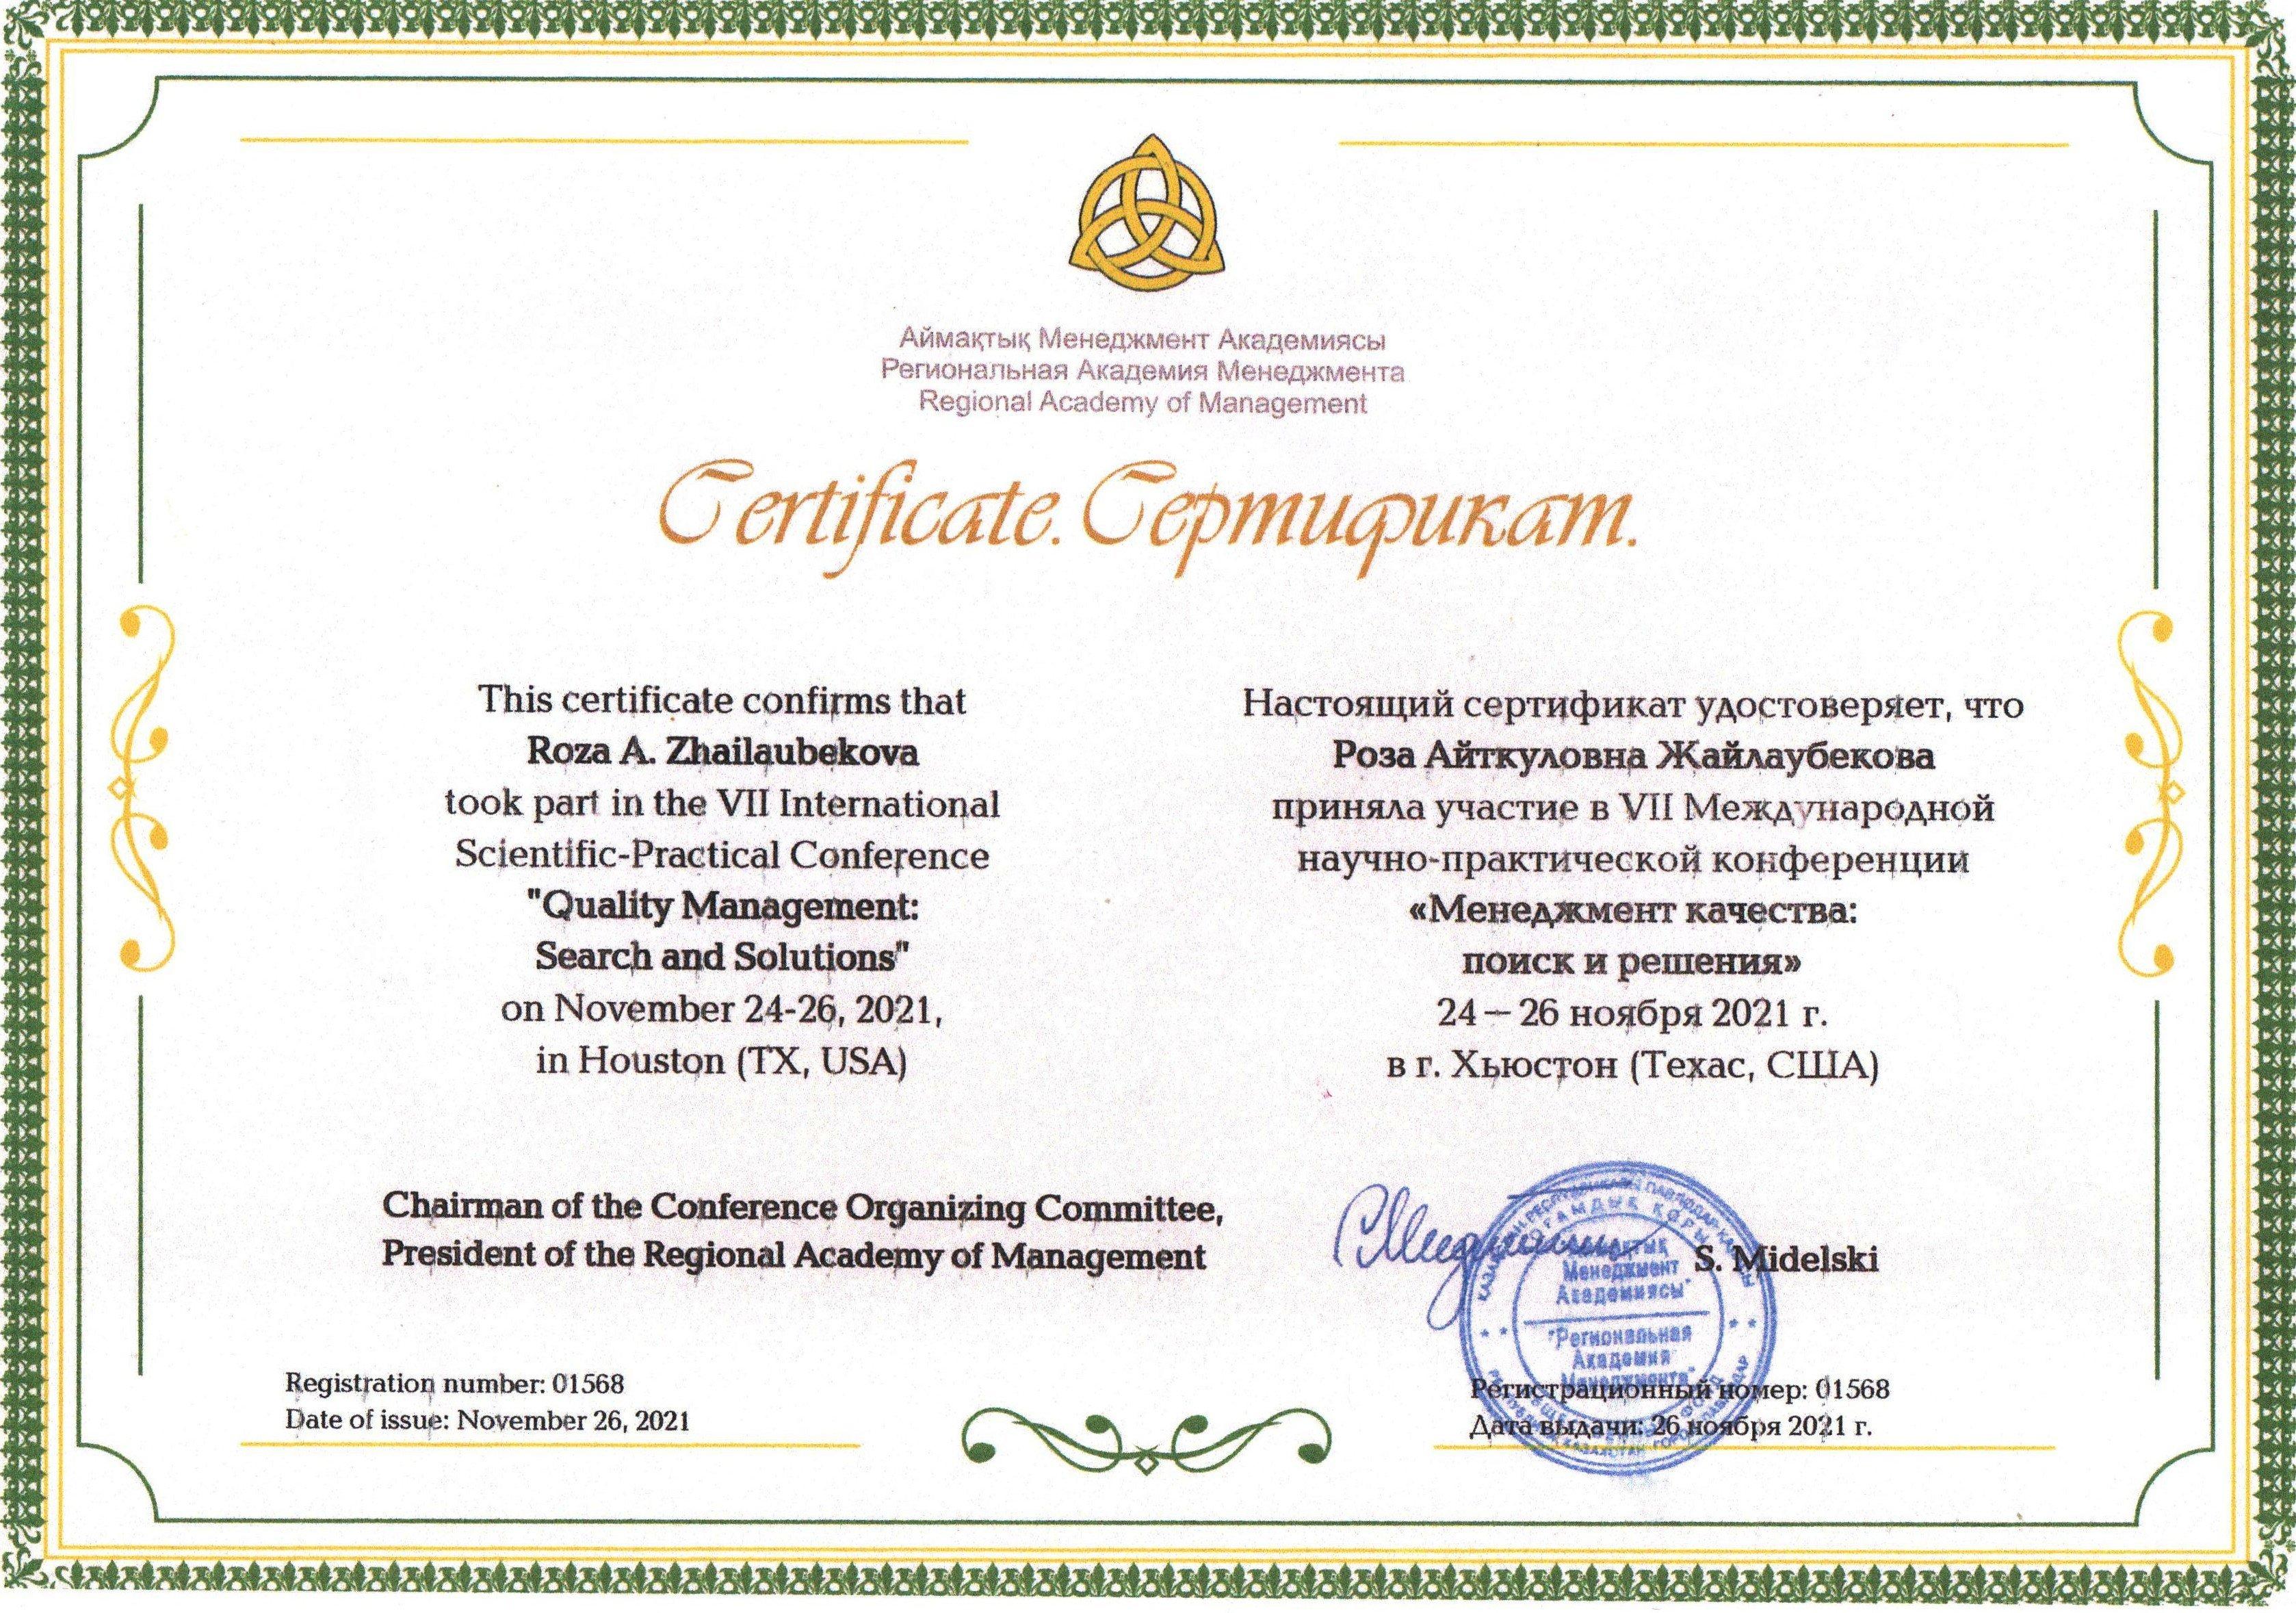 Сертификат участника VII Международной научно-практической конференции "Менеджмент качества:поиск и решения"